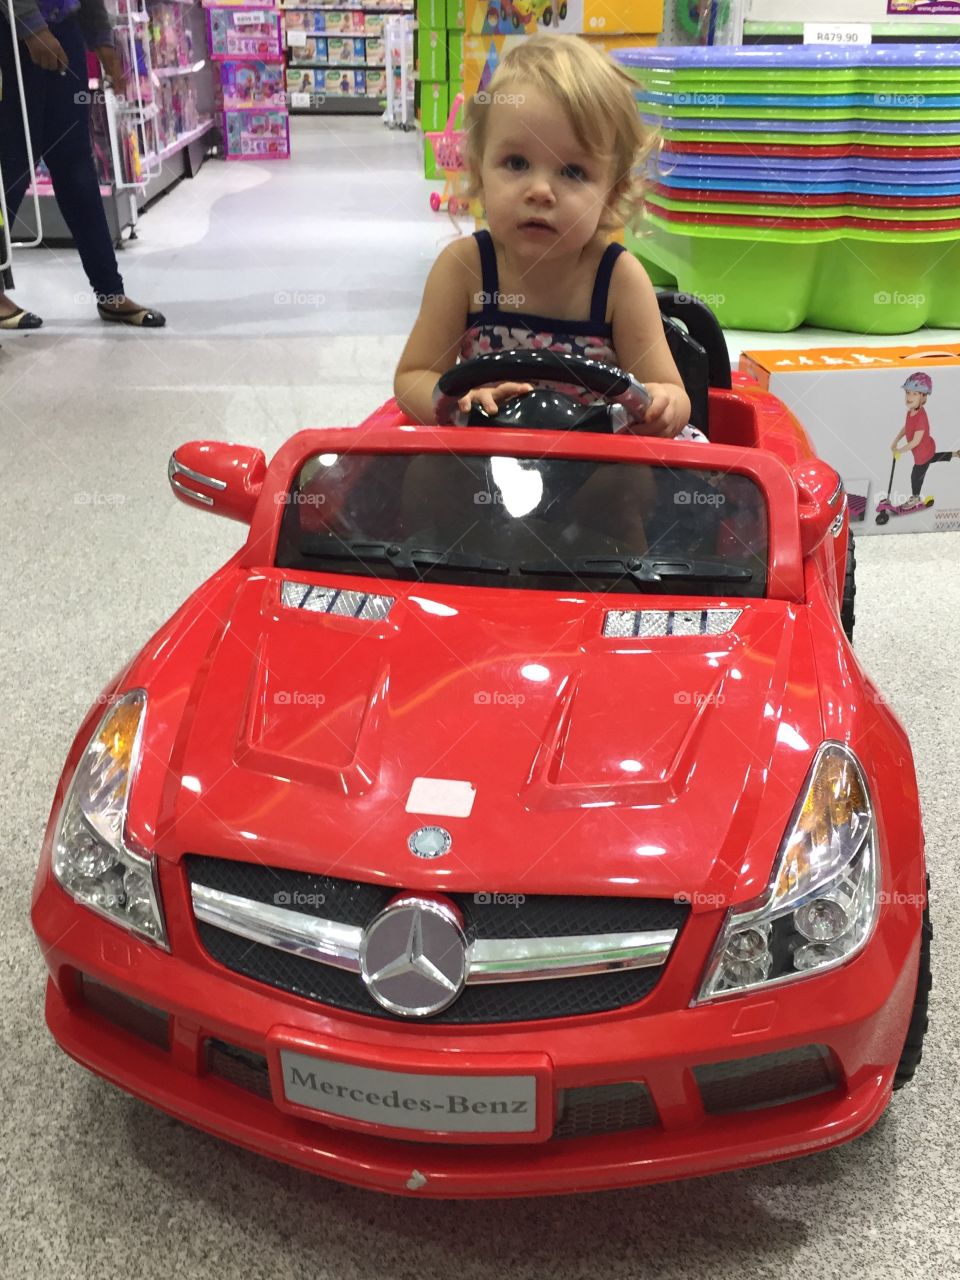 Toddler driving car